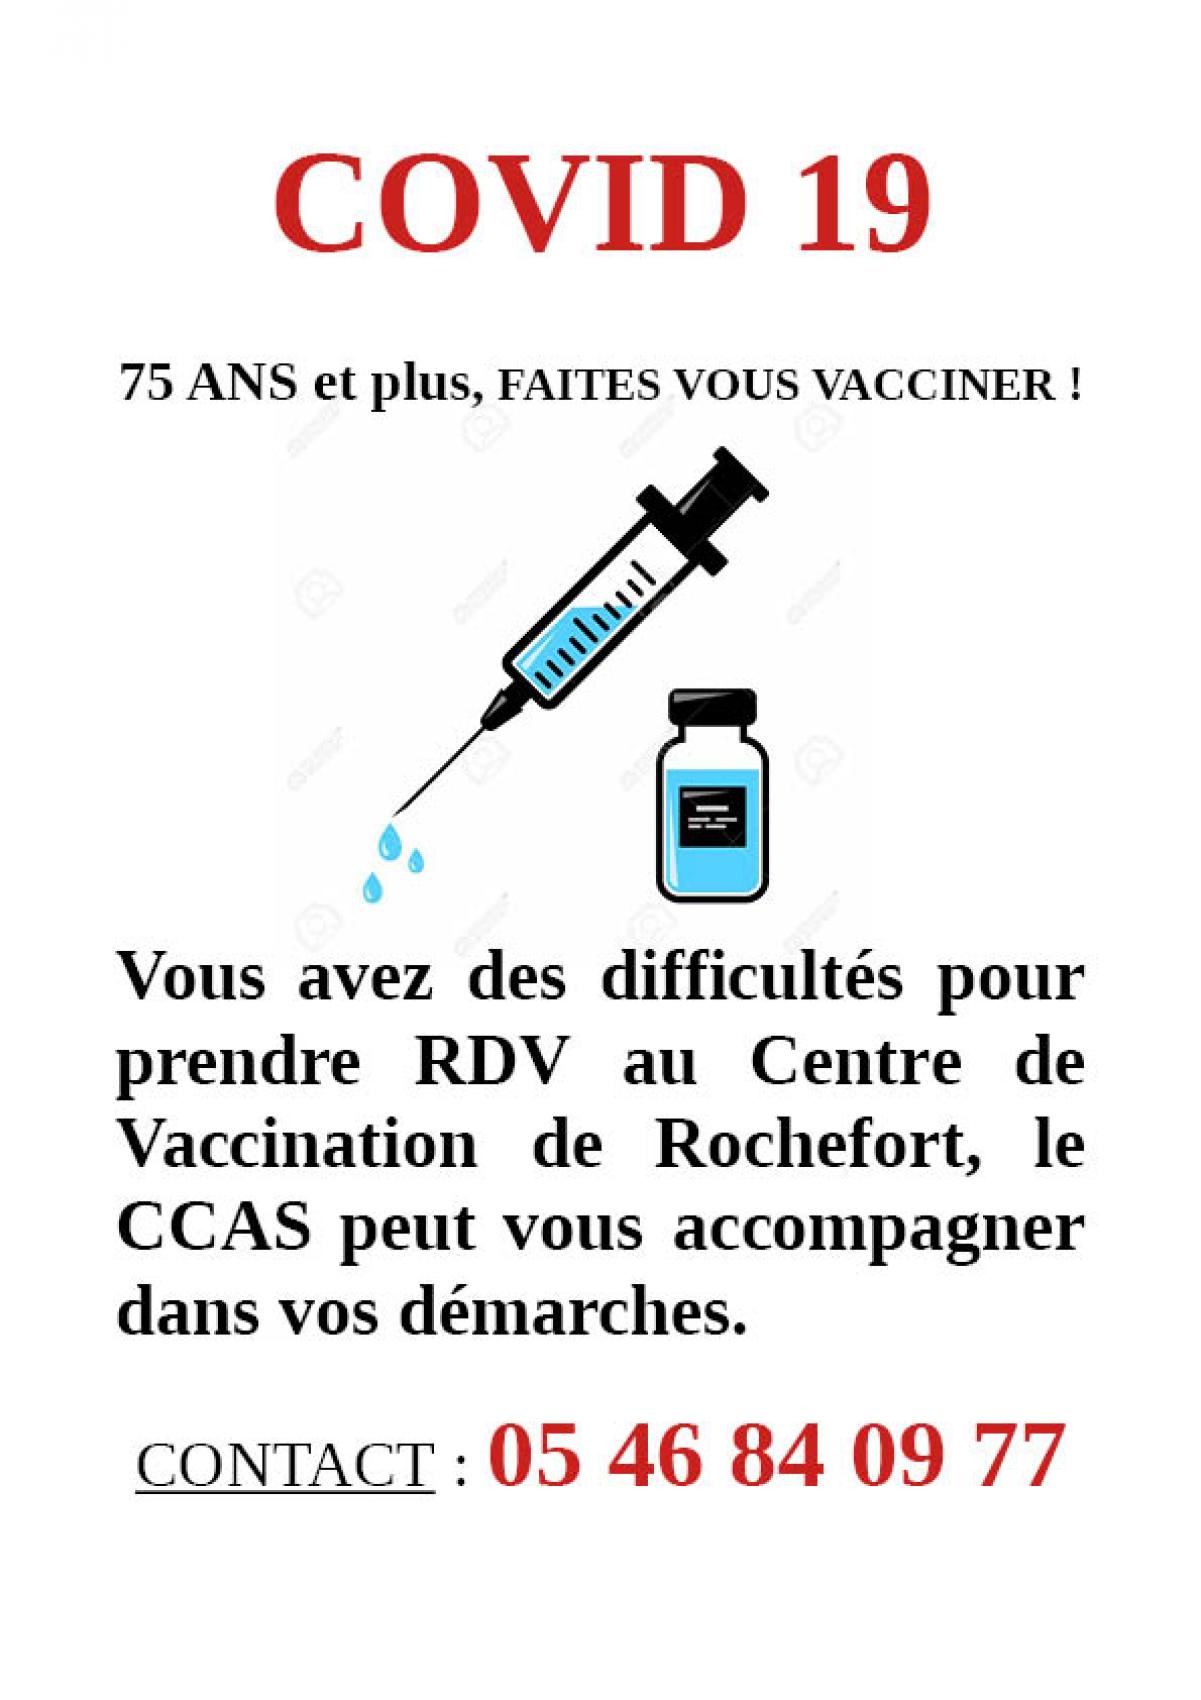 Vous avez des difficultés pour prendre rendez-vous au centre de vaccination de Rochefort, le Centre Communal d'Action Sociale de Fouras-les-Bains peut vous accompagner dans vos démarches.  Contact : 05 46 84 09 77